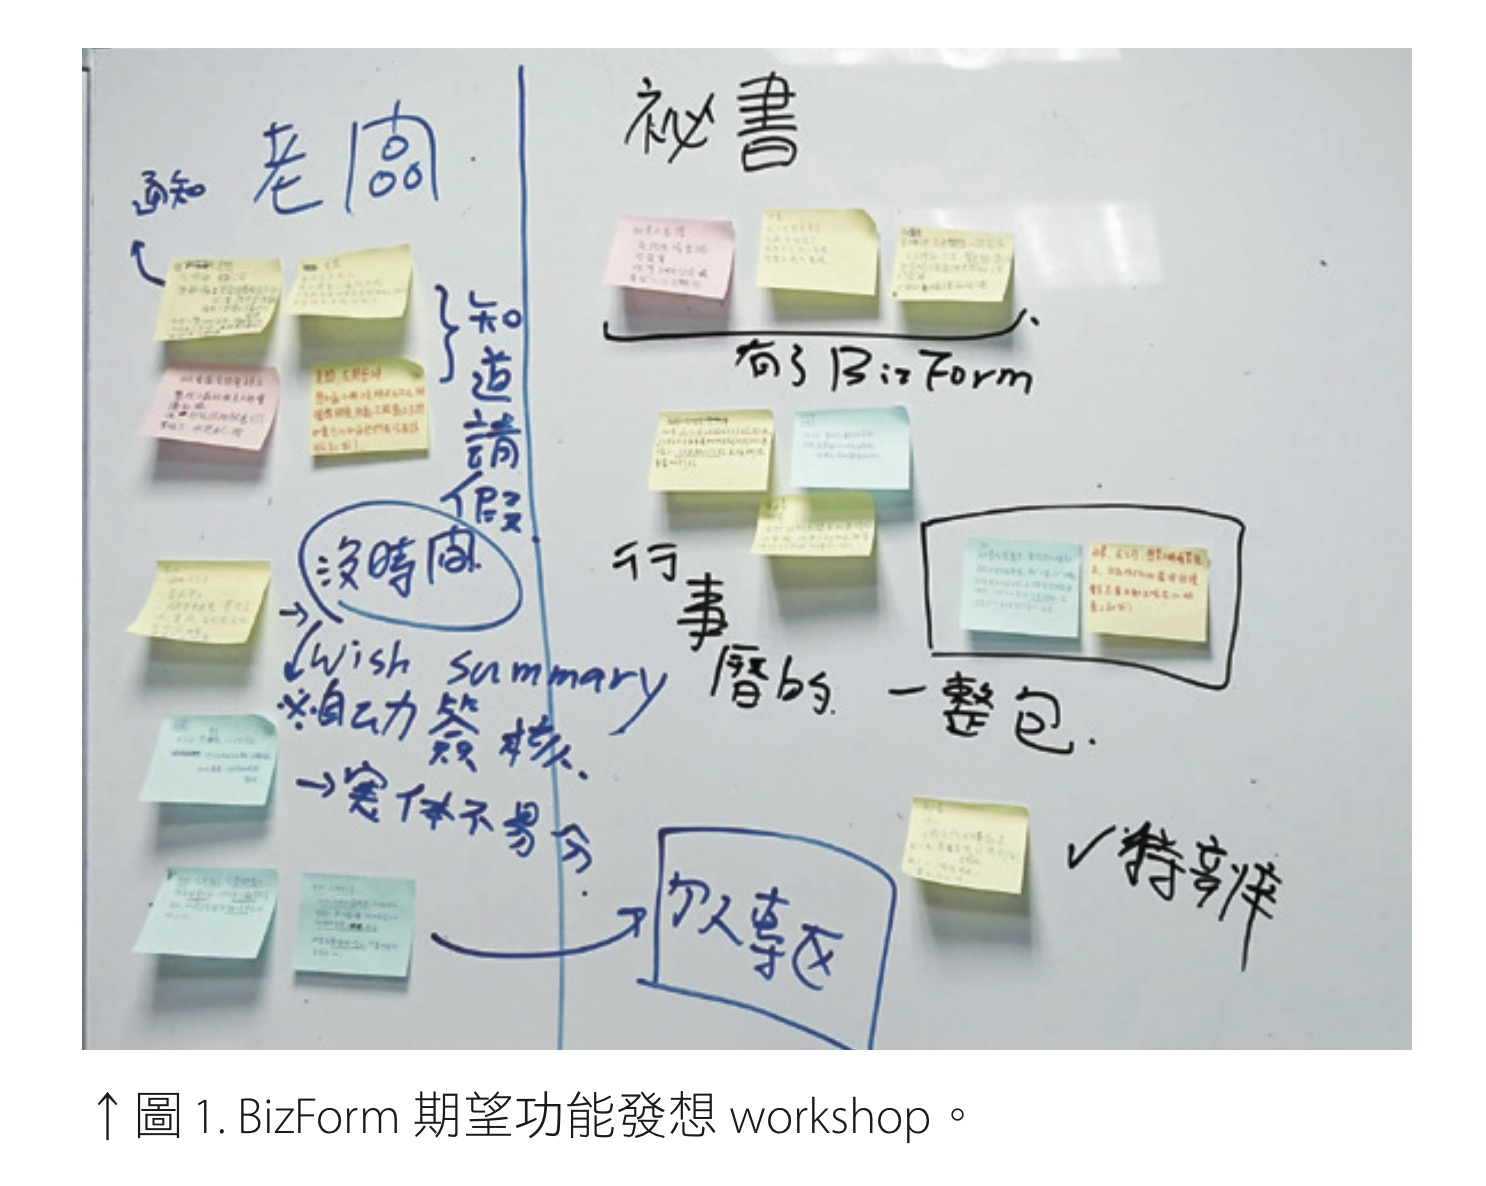 圖 1. BizForm 期望功能發想 workshop